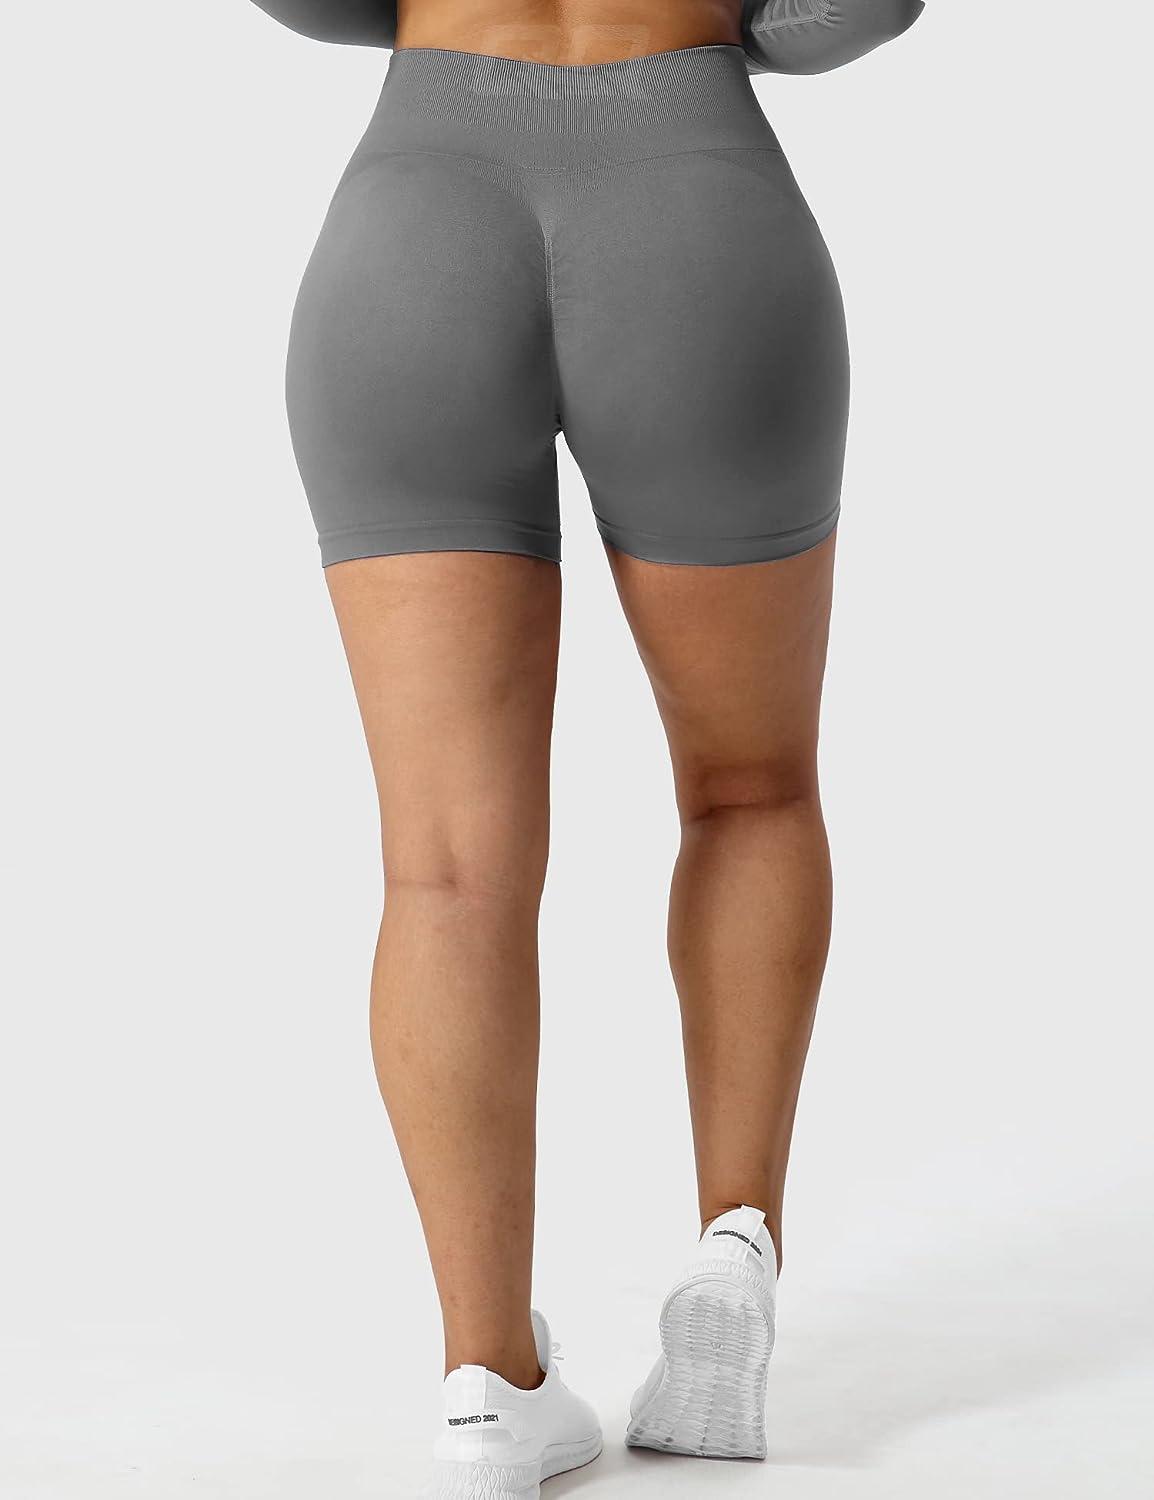 3 Piece Workout Shorts Womens Seamless High Waist Butt Lifting Scrunch Yoga  Gym Shorts